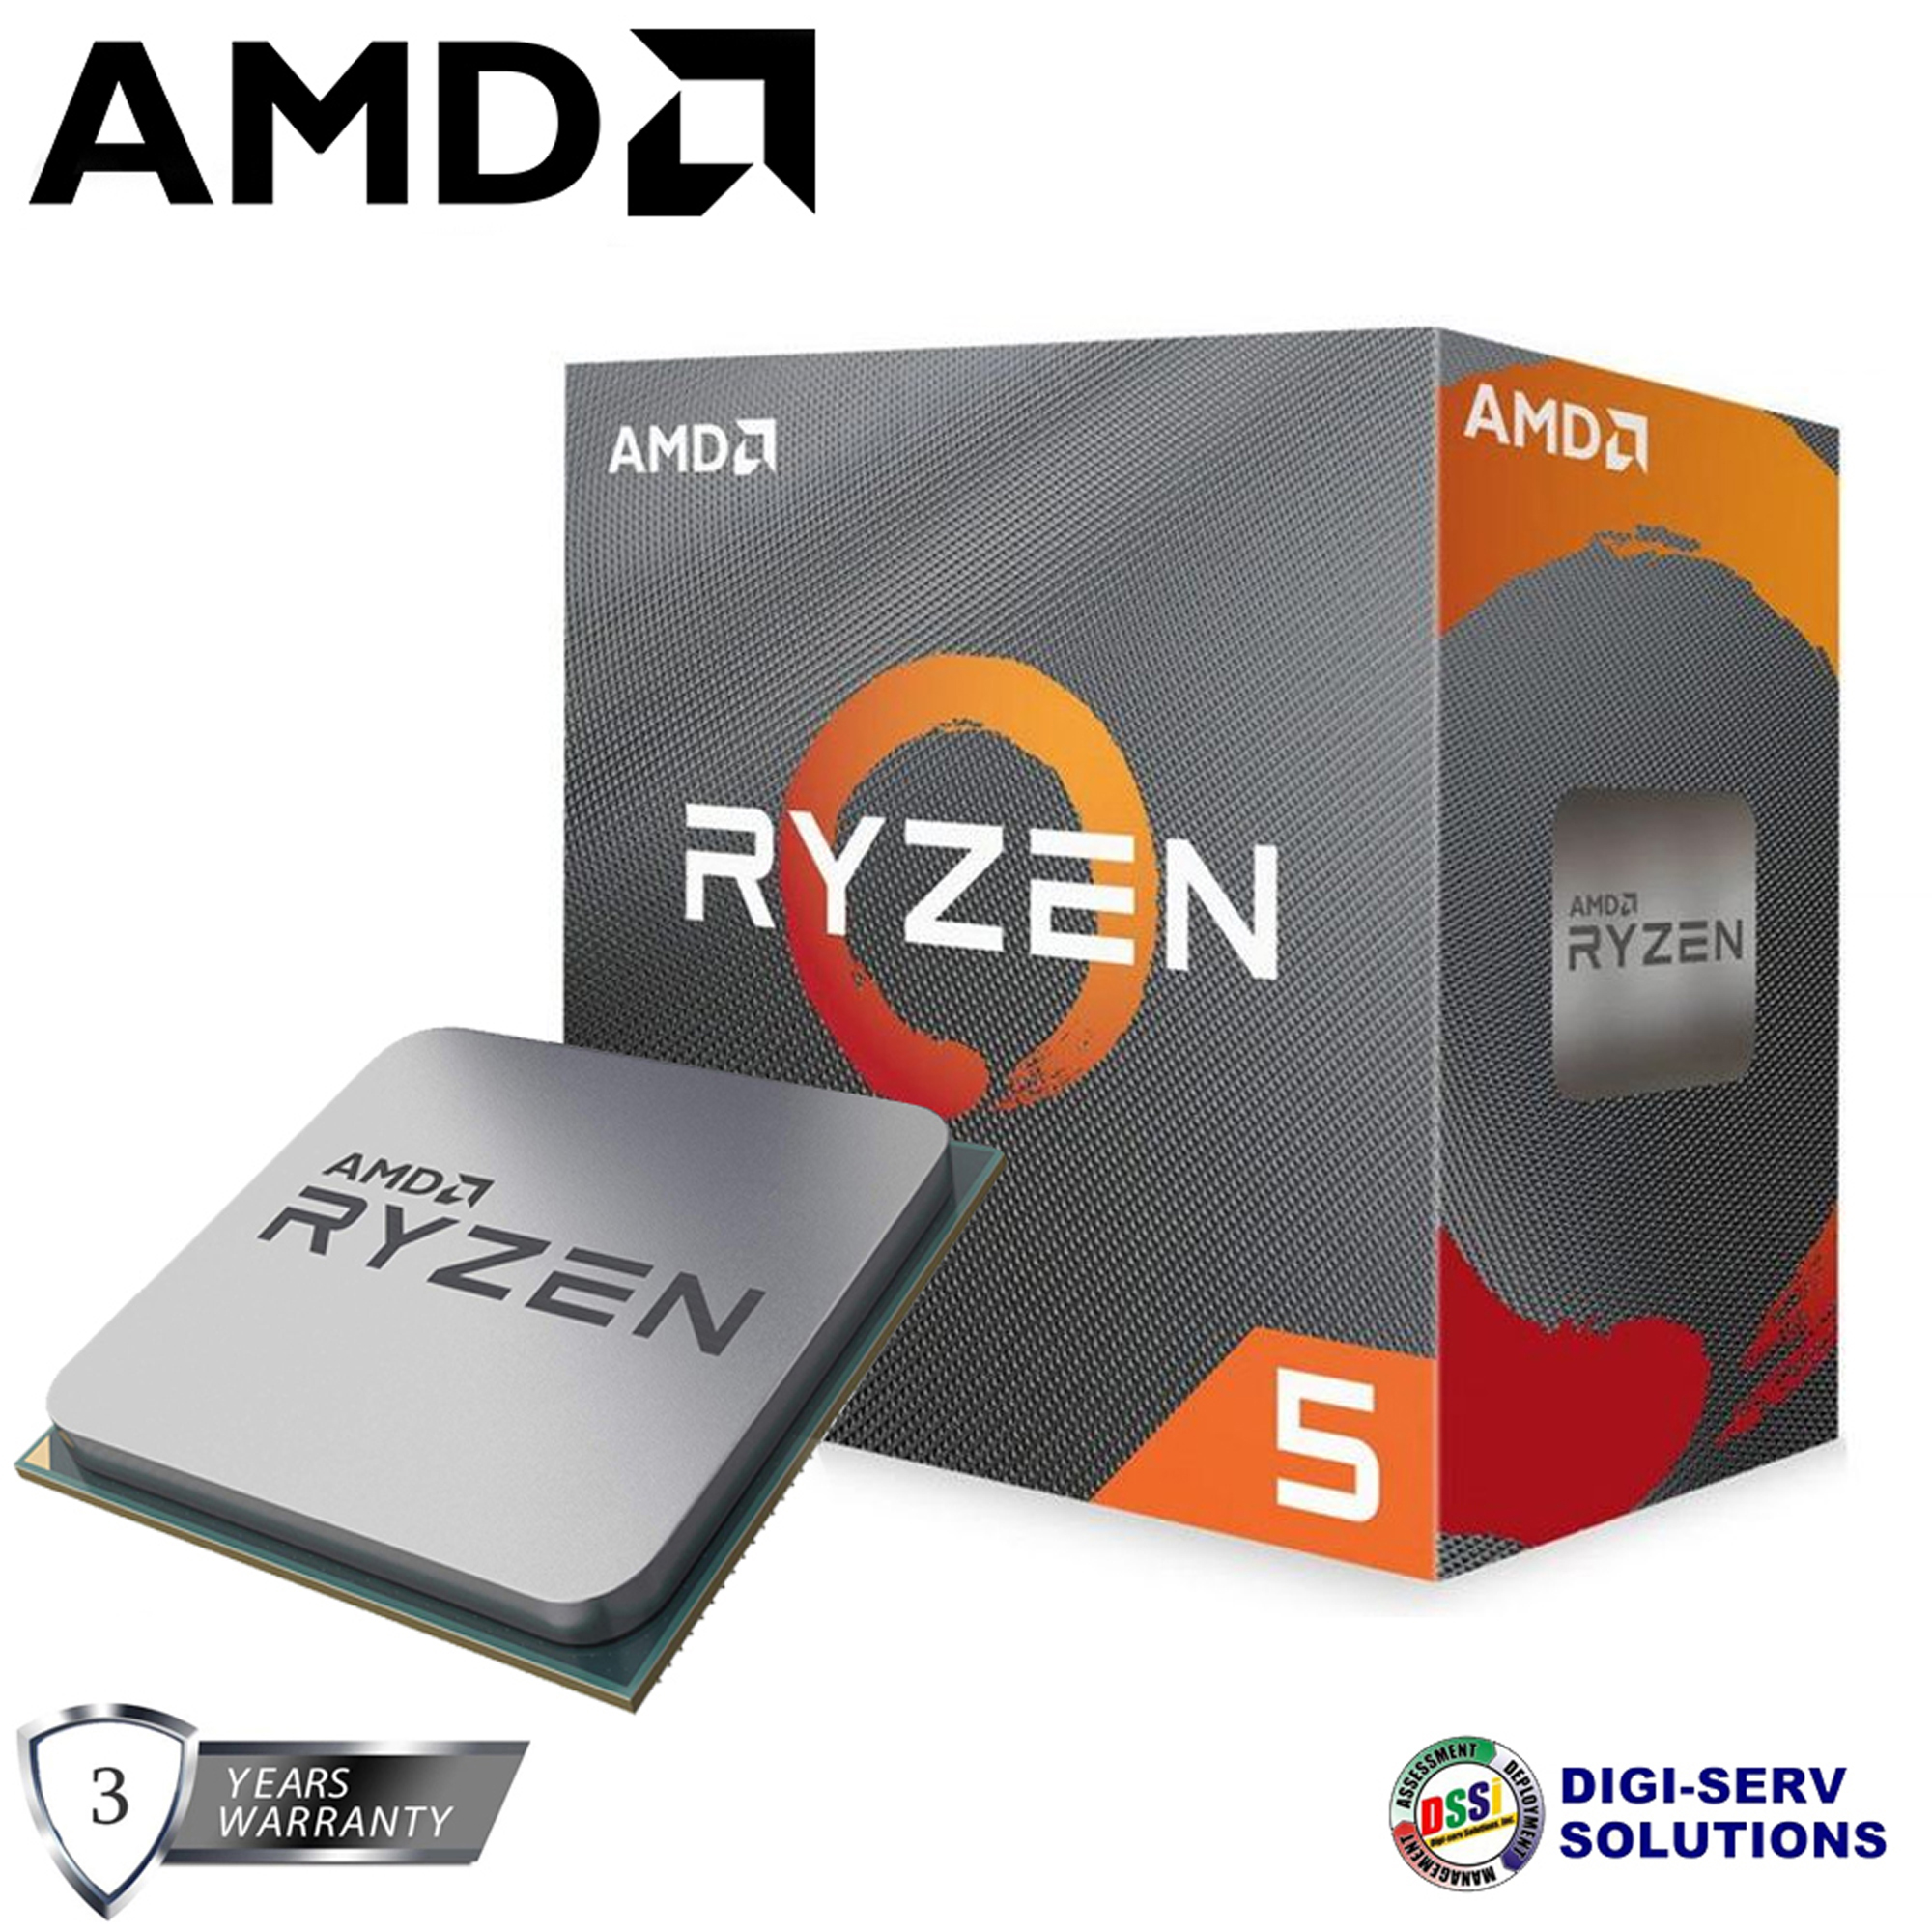 AMD Ryzen 5 3600, 6 Cores 4.2 GHz